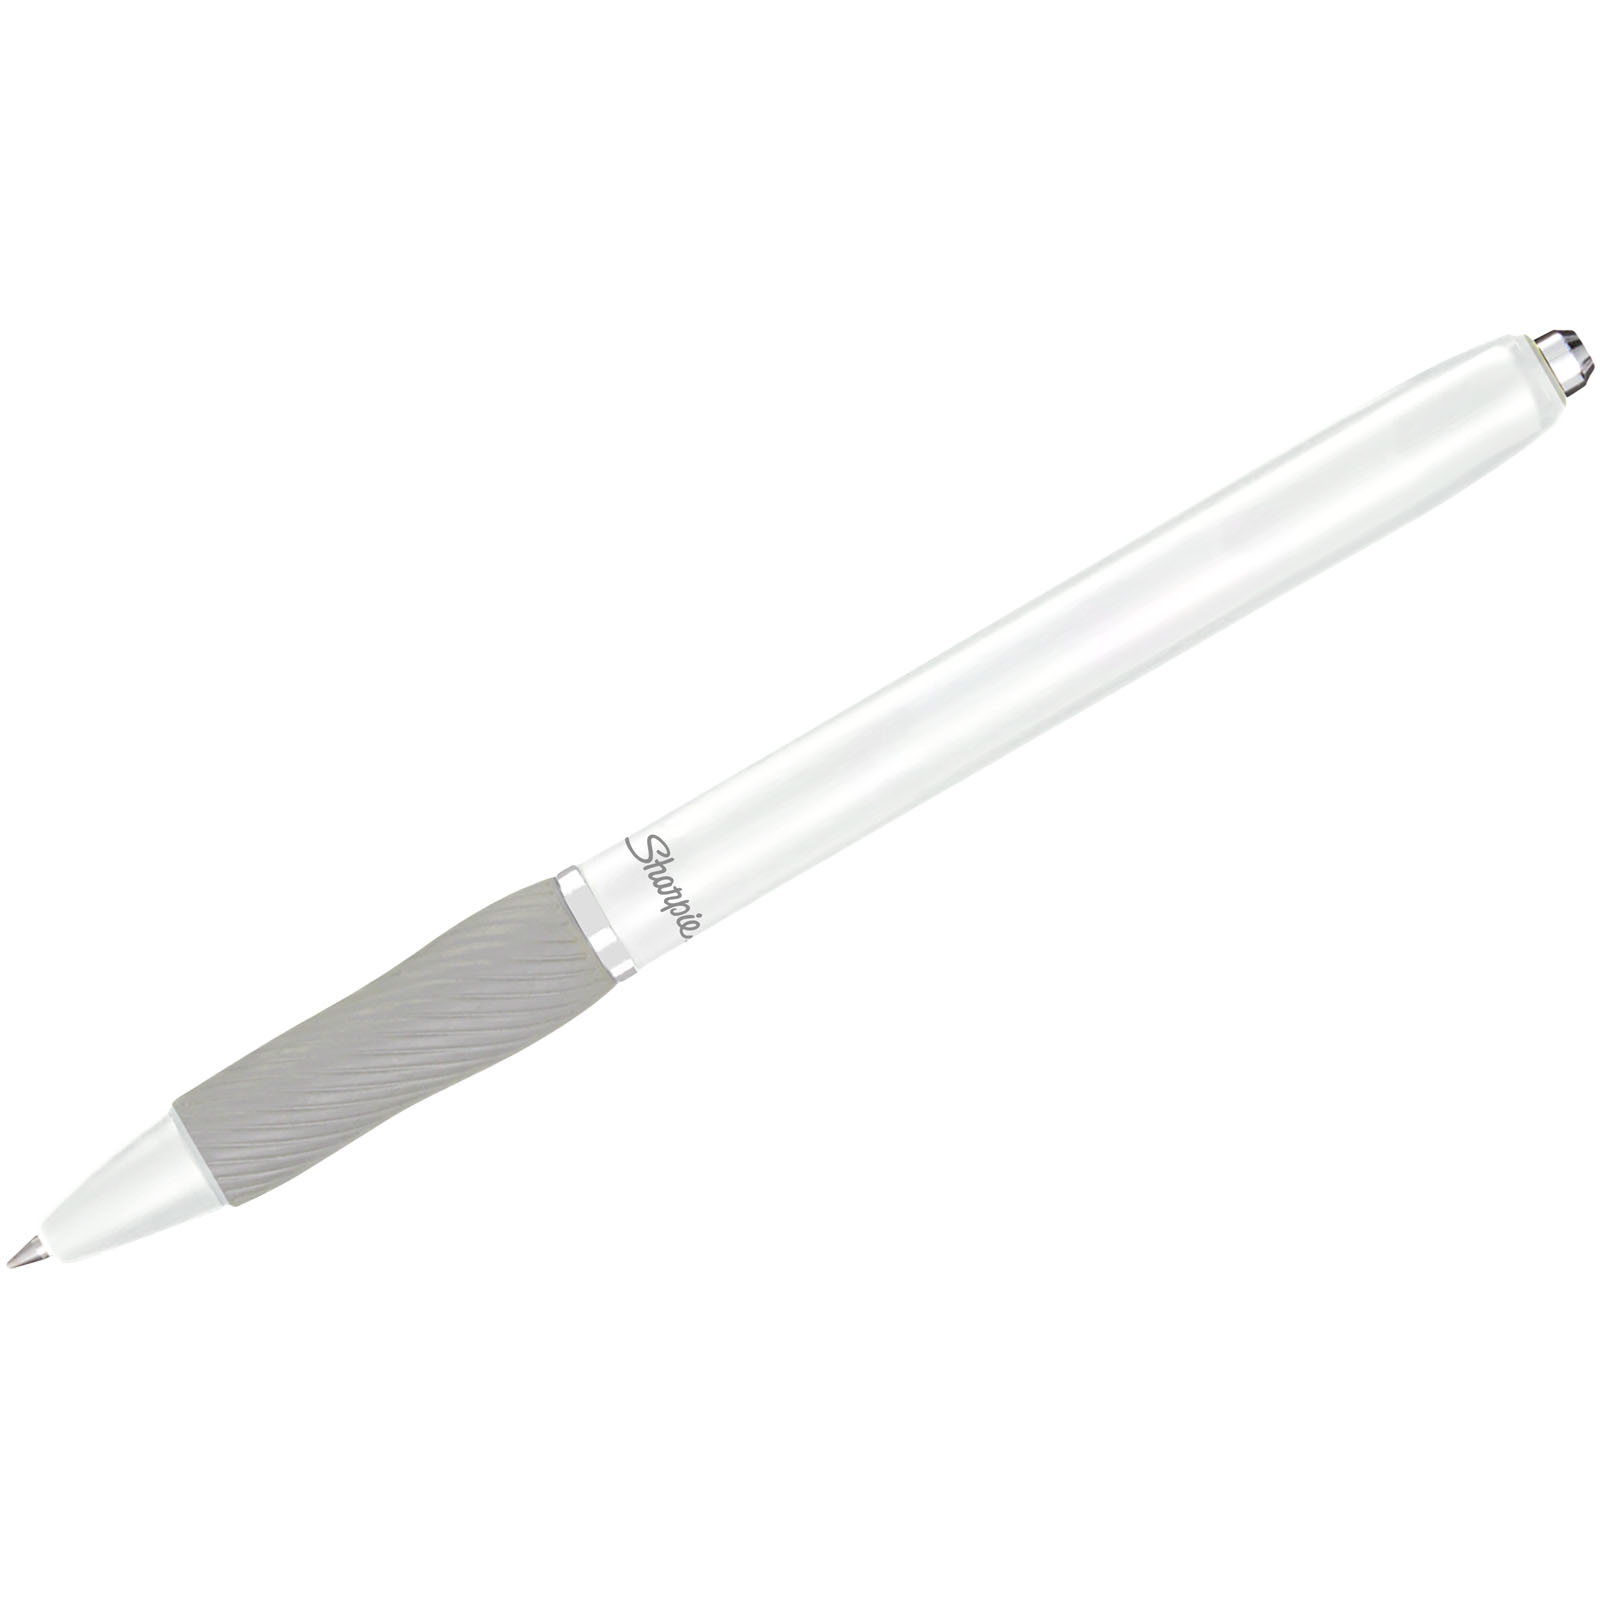 Advertising Ballpoint Pens - Sharpie® S-Gel ballpoint pen